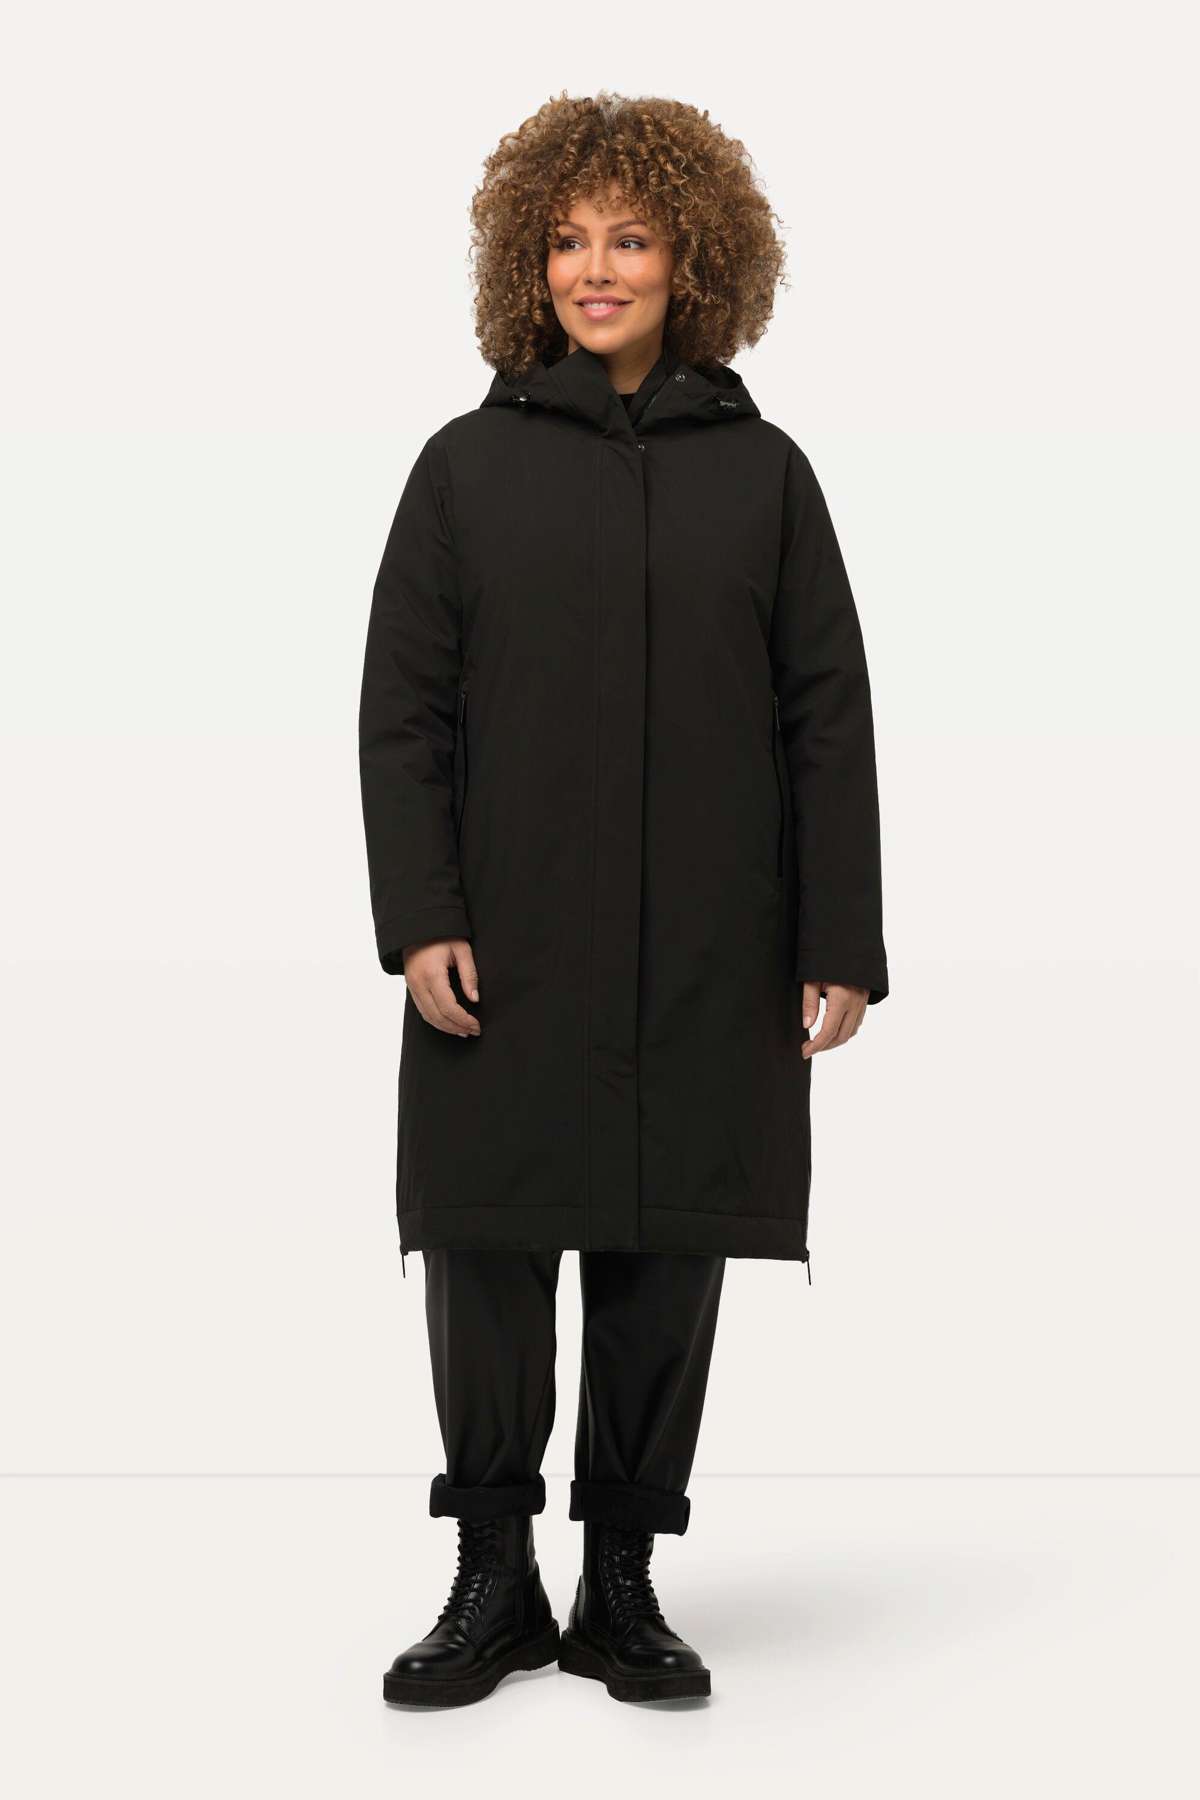 Парка HYPRAR функциональная куртка с боковой молнией, водонепроницаемая